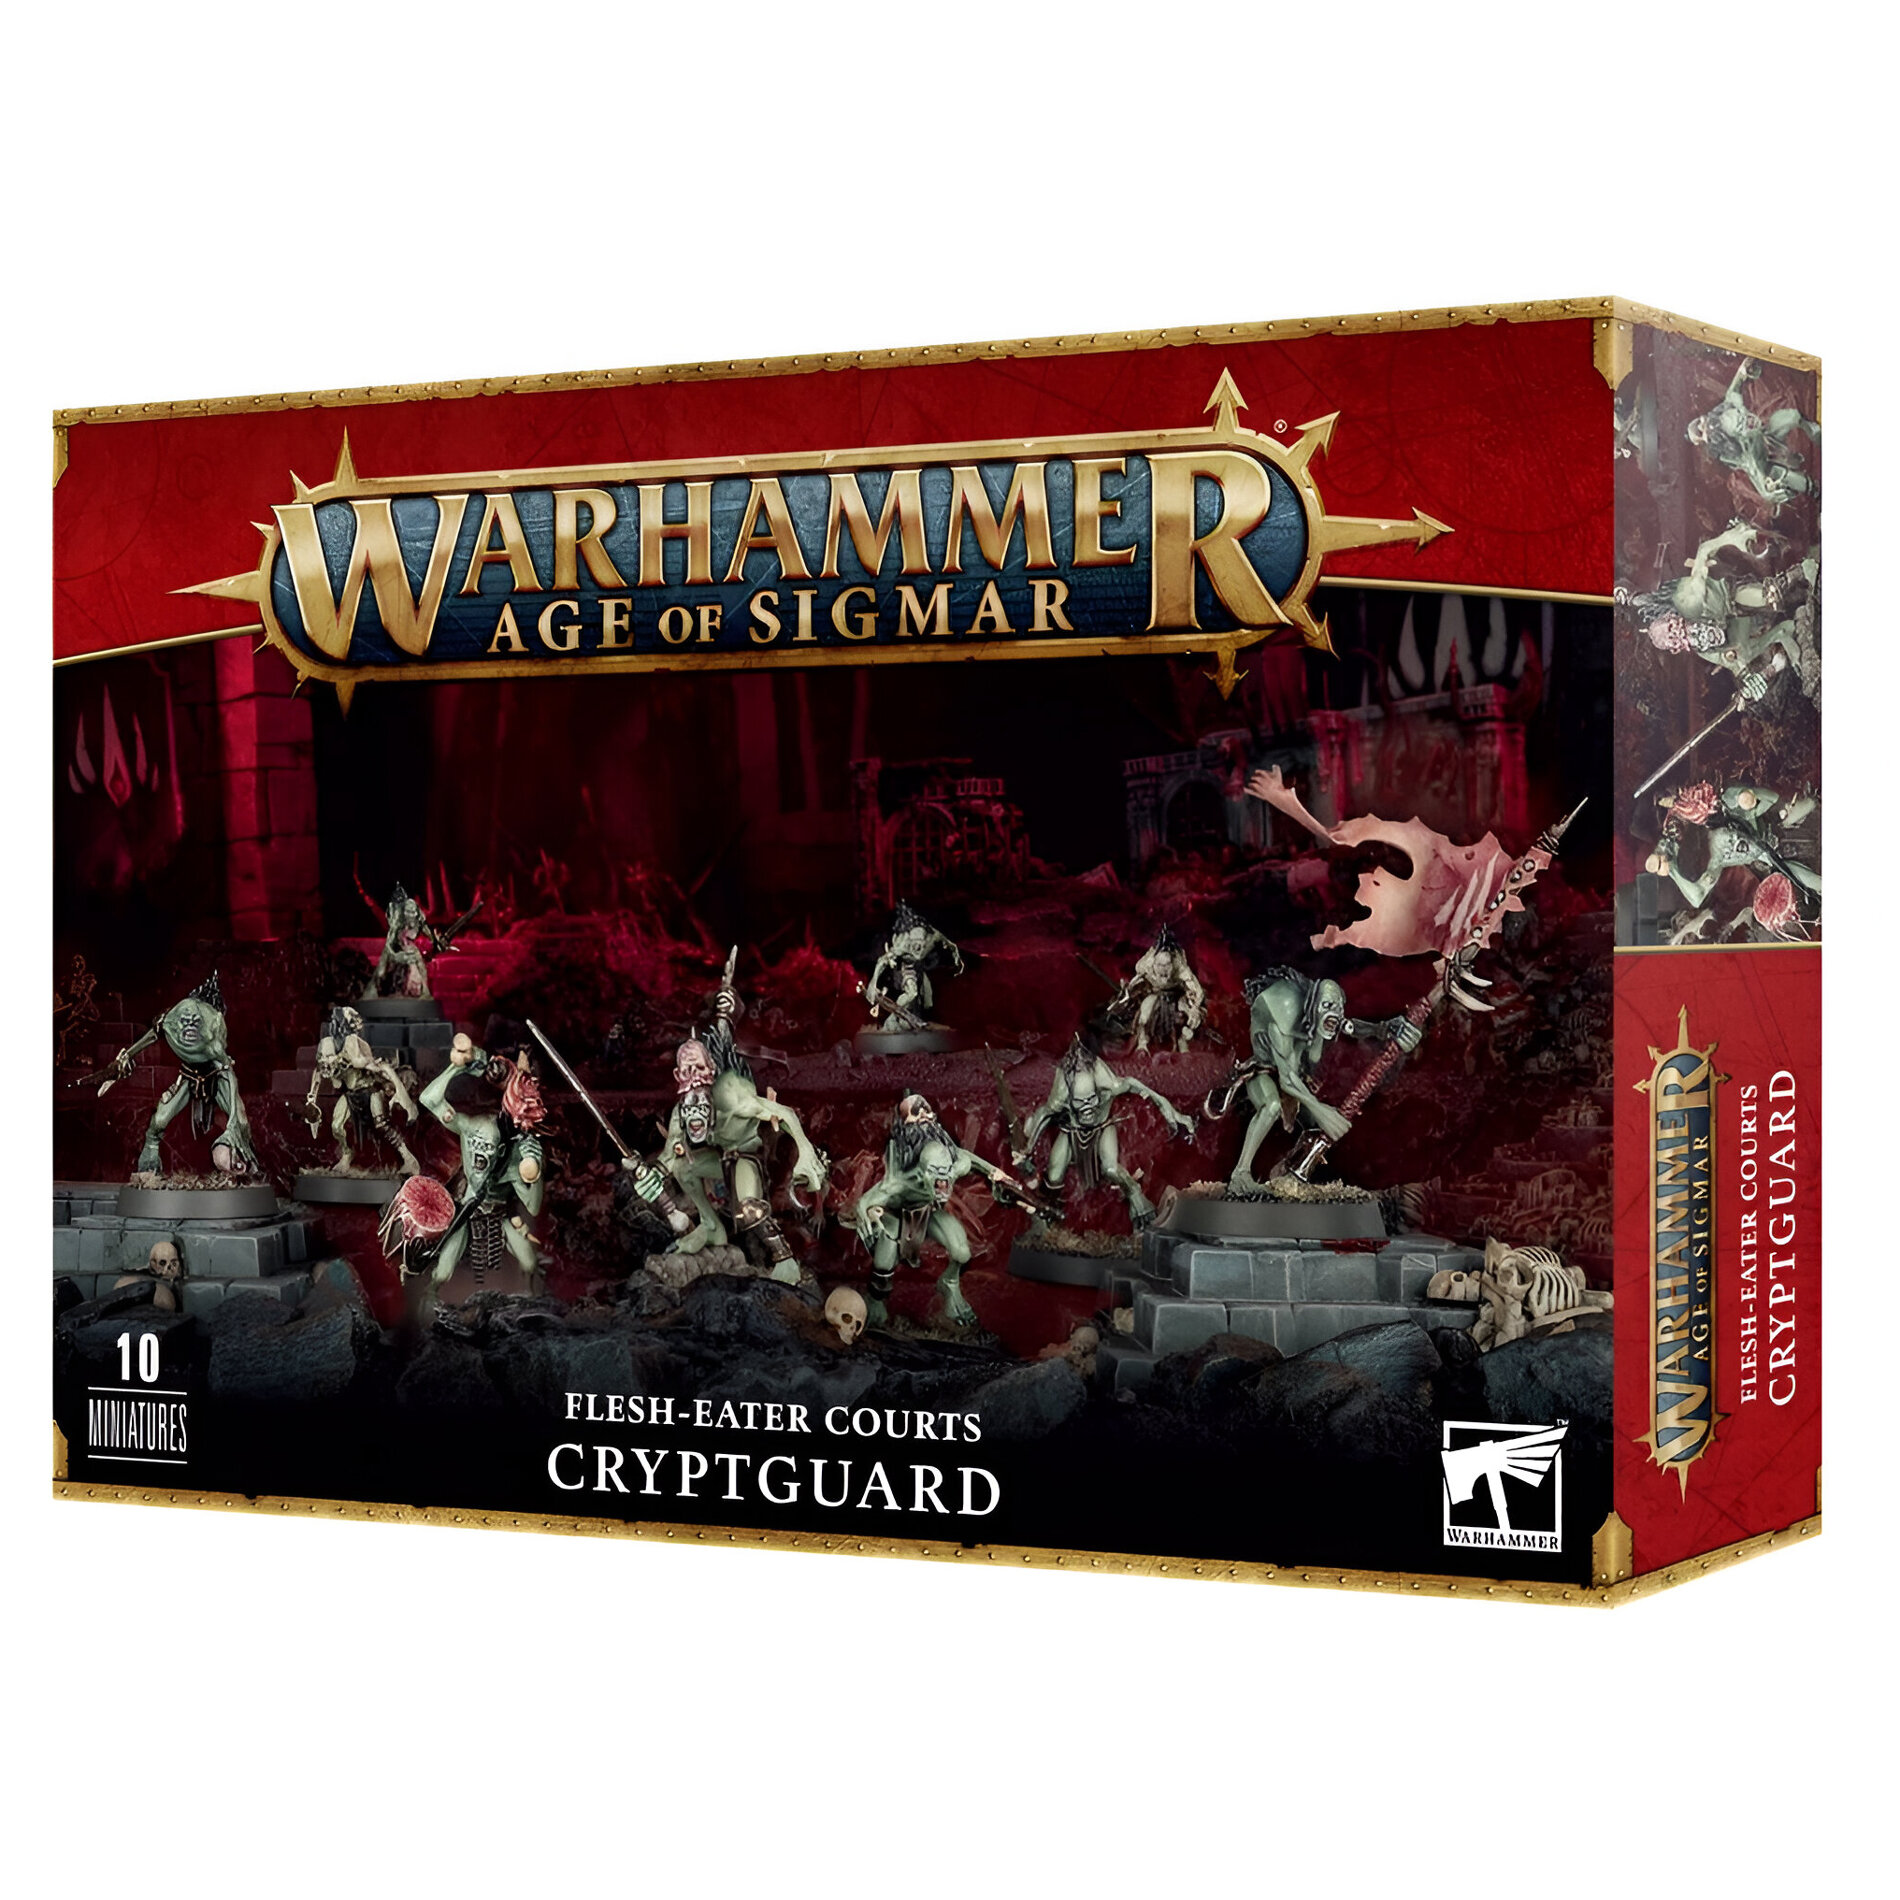 Миниатюры для настольной игры Games Workshop Warhammer Age of Sigmar: Flesh-Eater Courts - Cryptguard 91-76